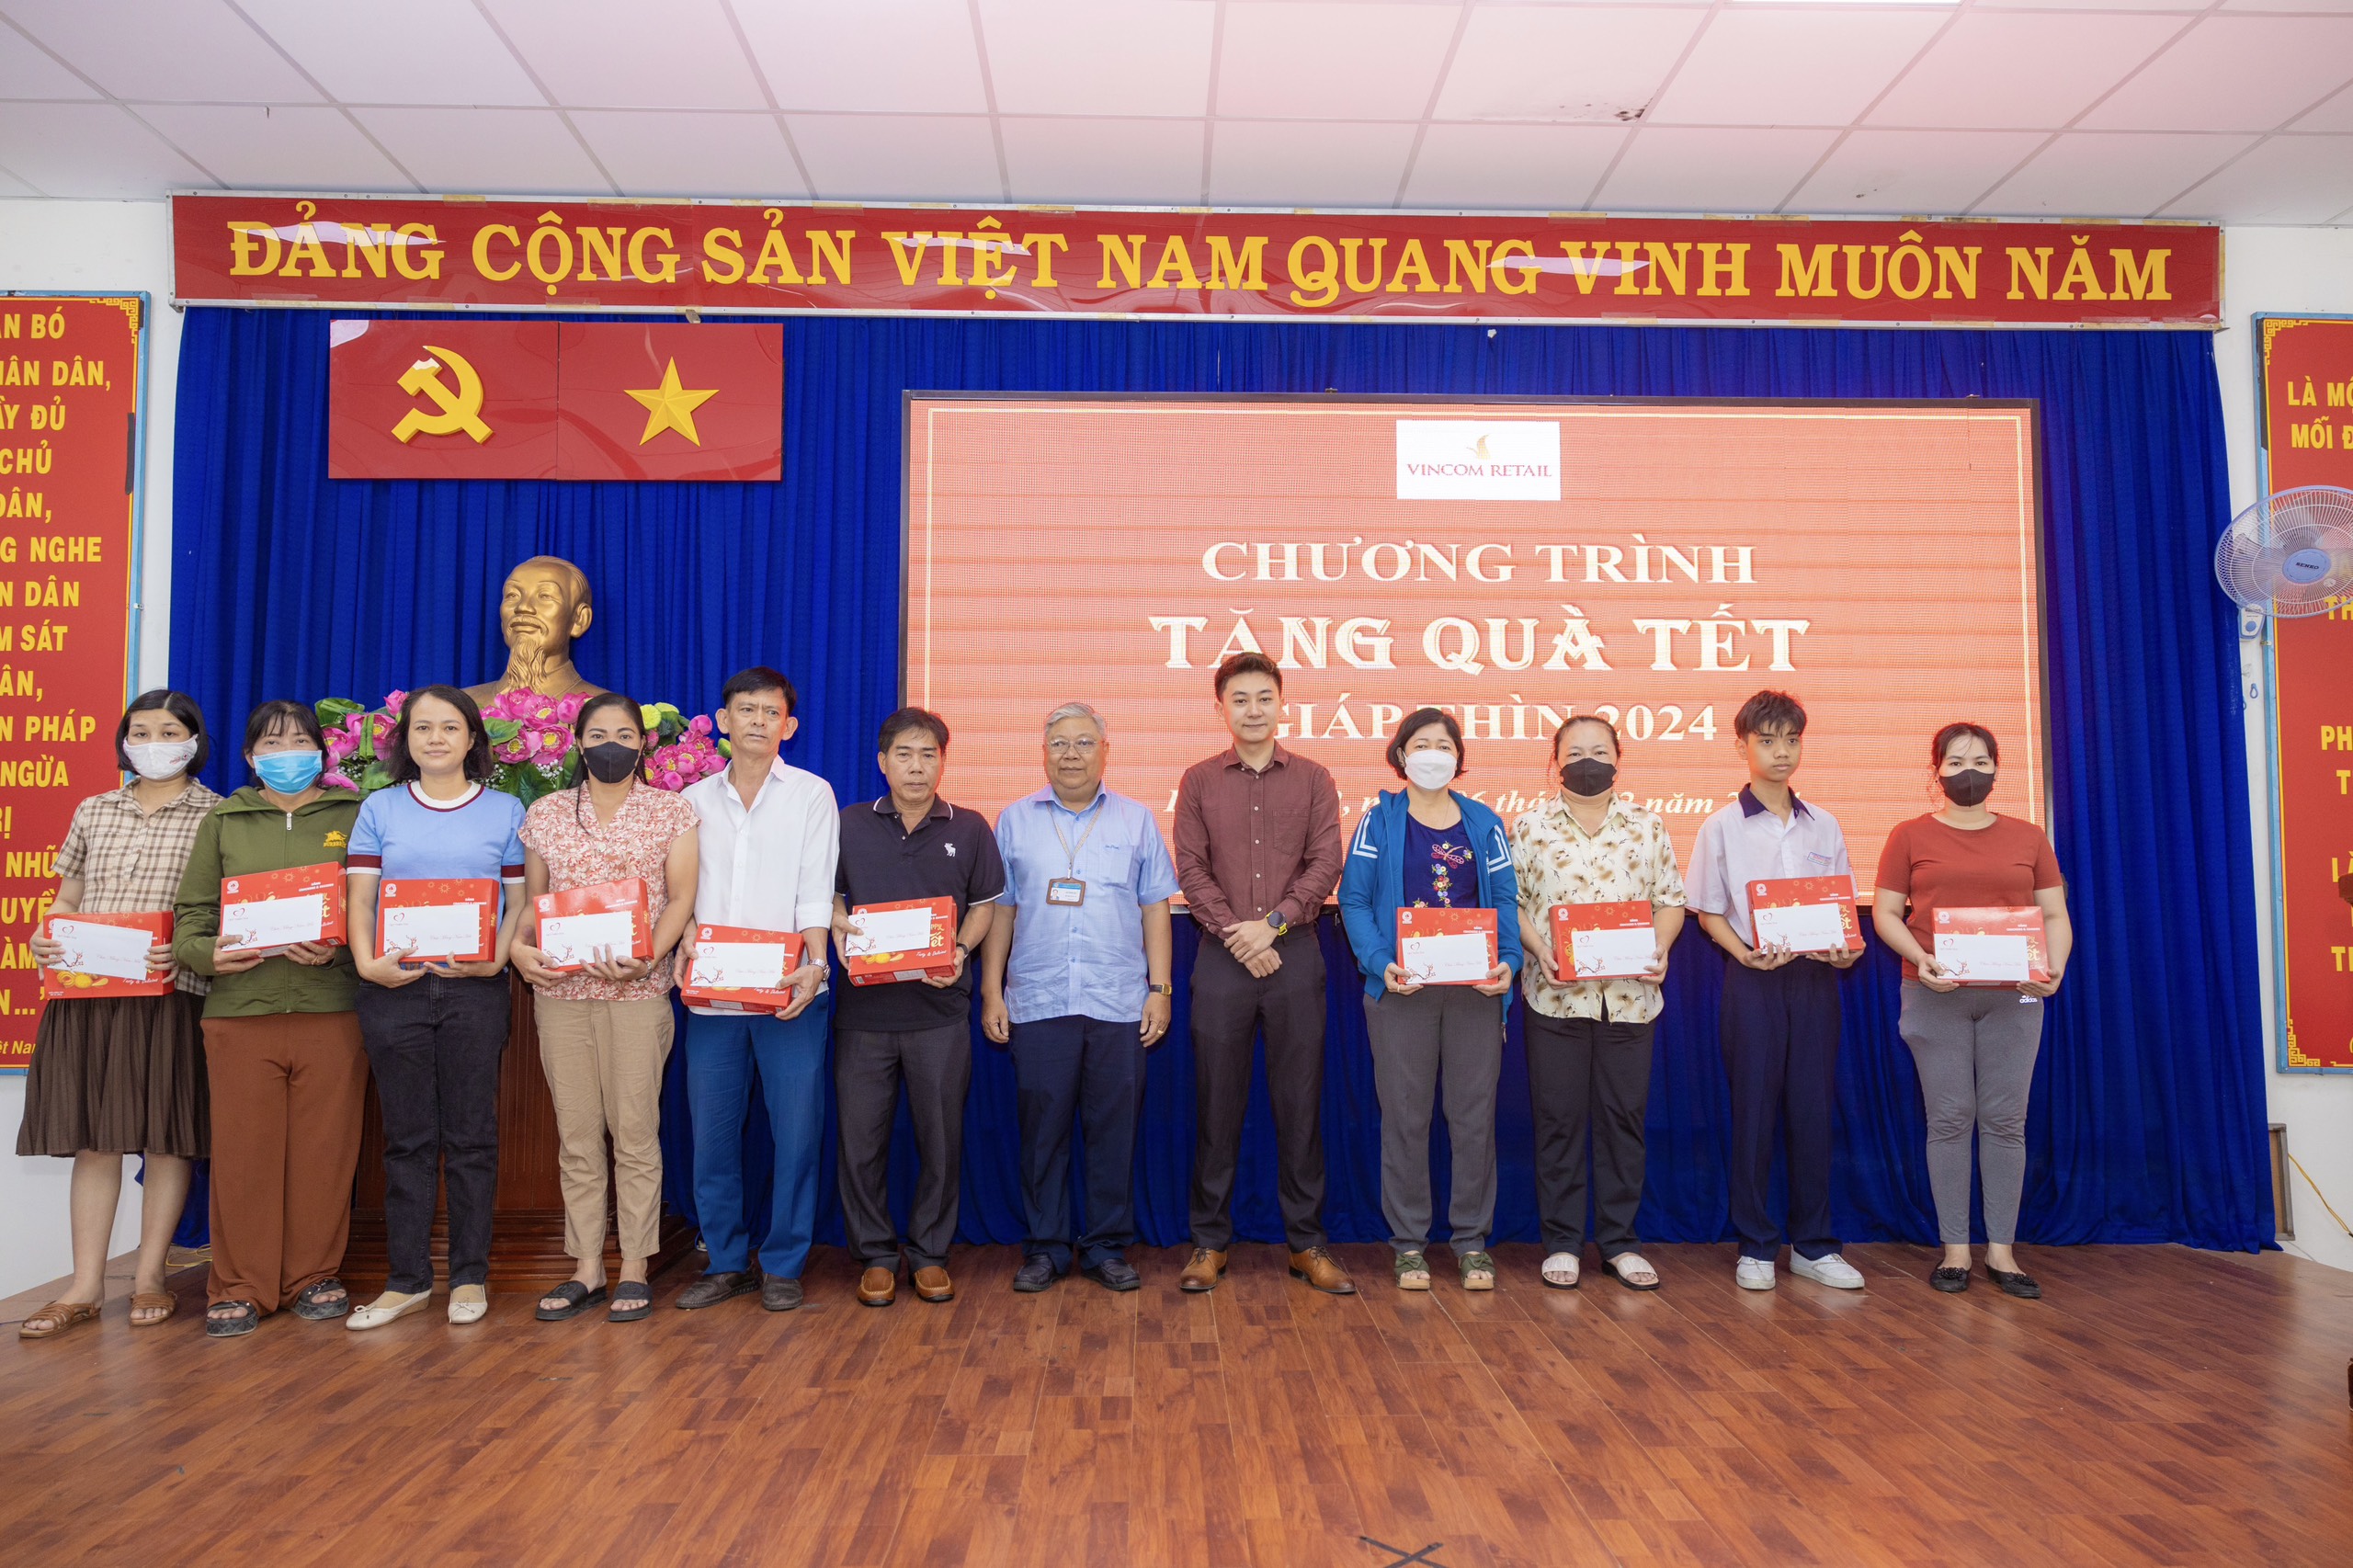 Đại diện BQL TTTM Vincom trao tặng quà Tết cho người dân có hoàn cảnh khó khăn tại TP. Hồ Chí Minh